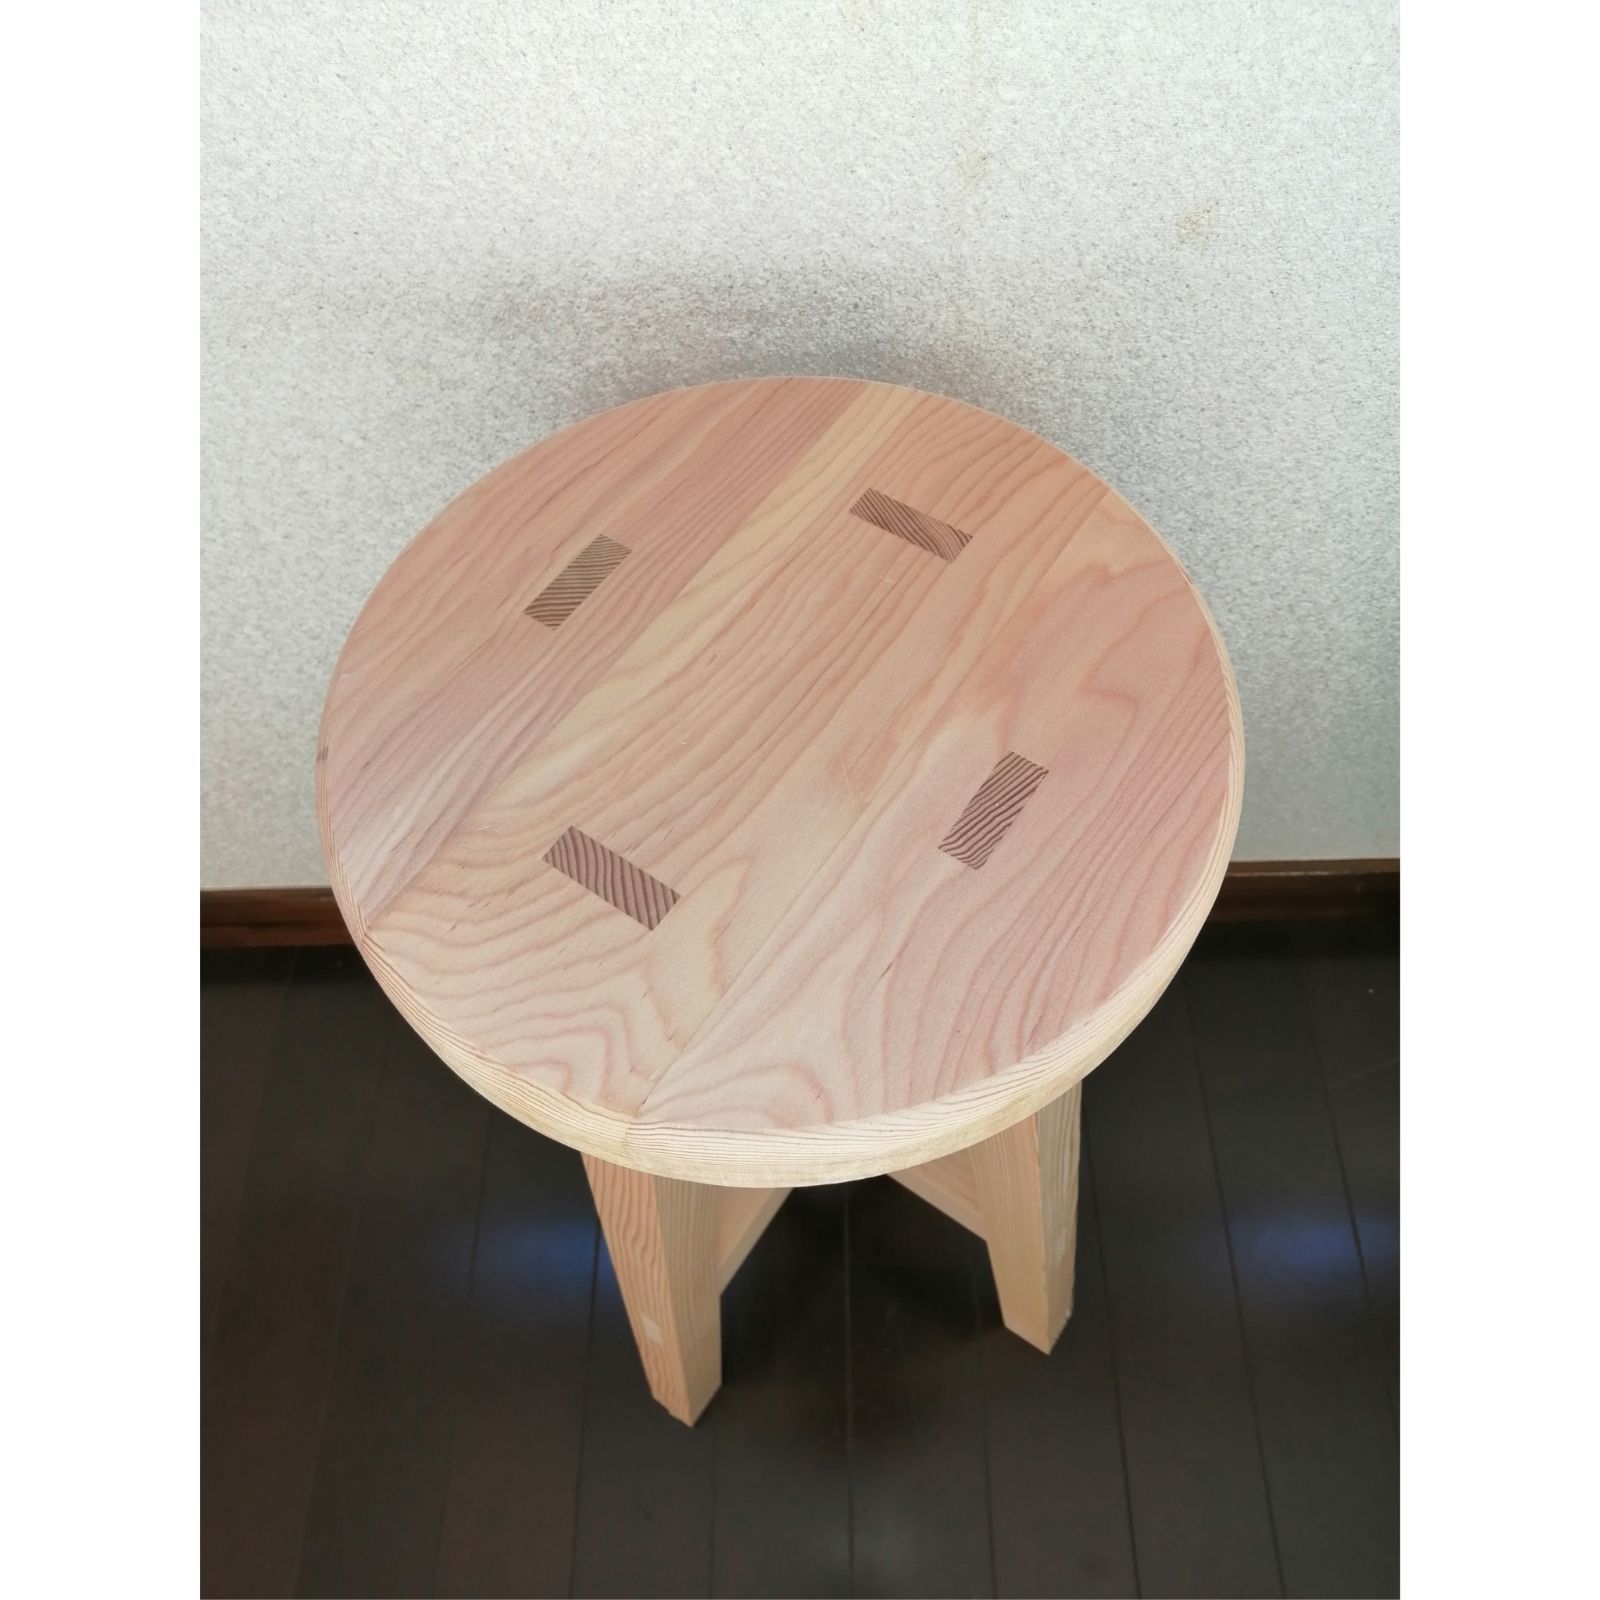 高価値セリー 【ほぞ組】木製スツール 高さ40cm 丸椅子 stool スツール 